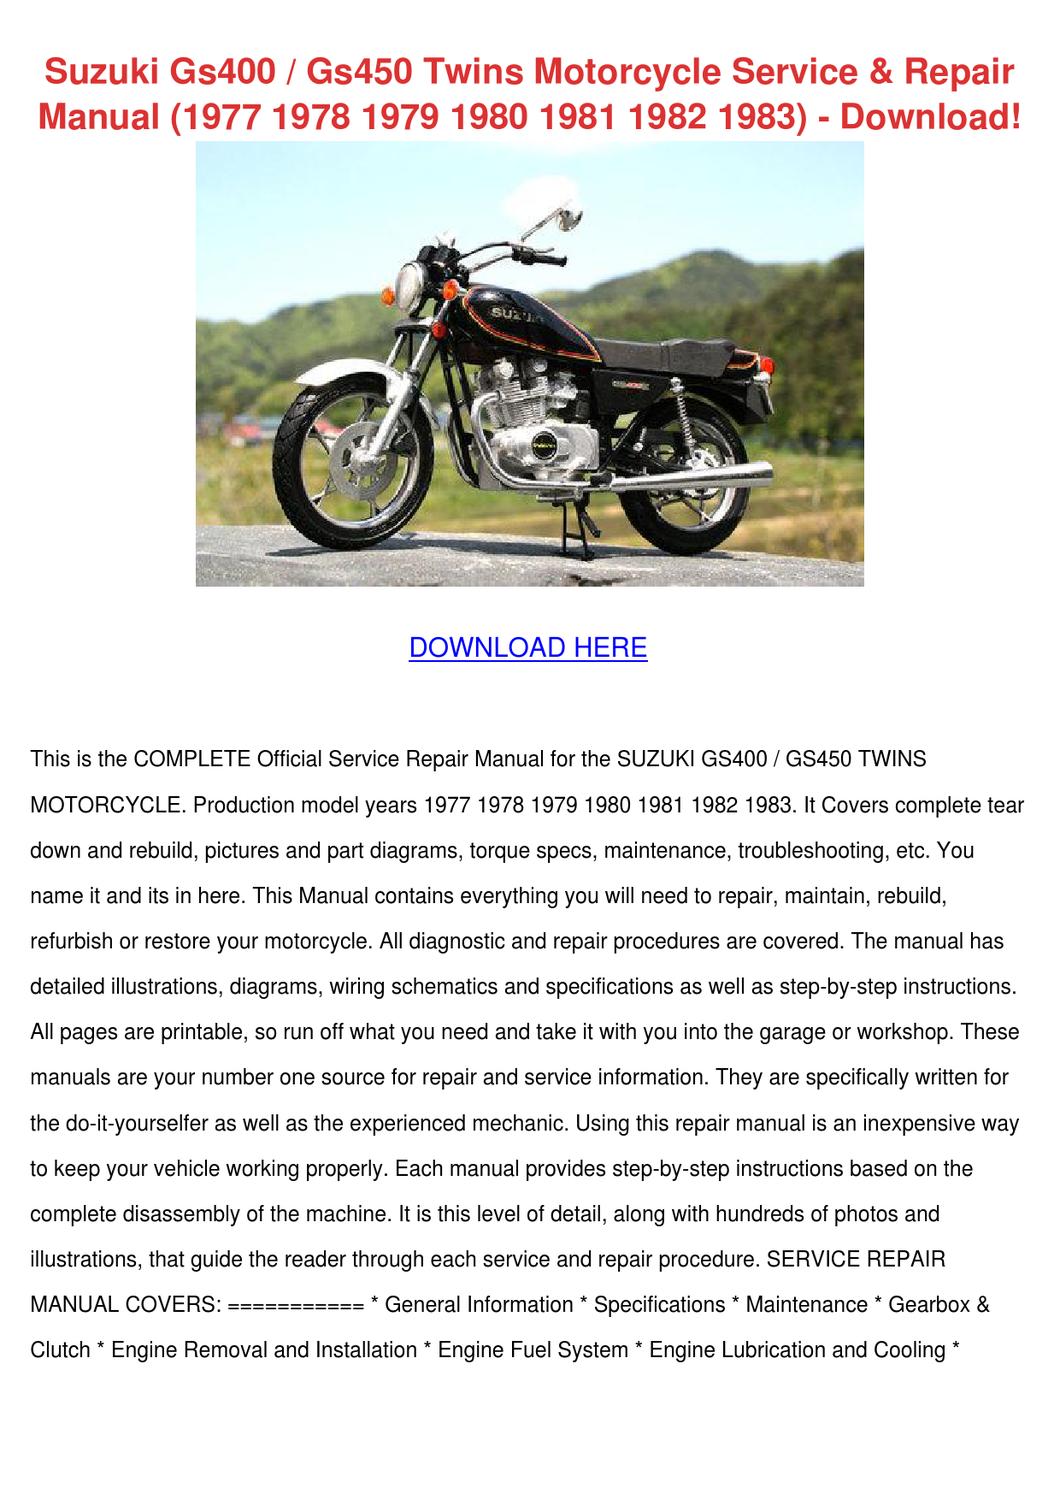 1977 suzuki gs400 motorcycle service manual pdf free download adobe reader